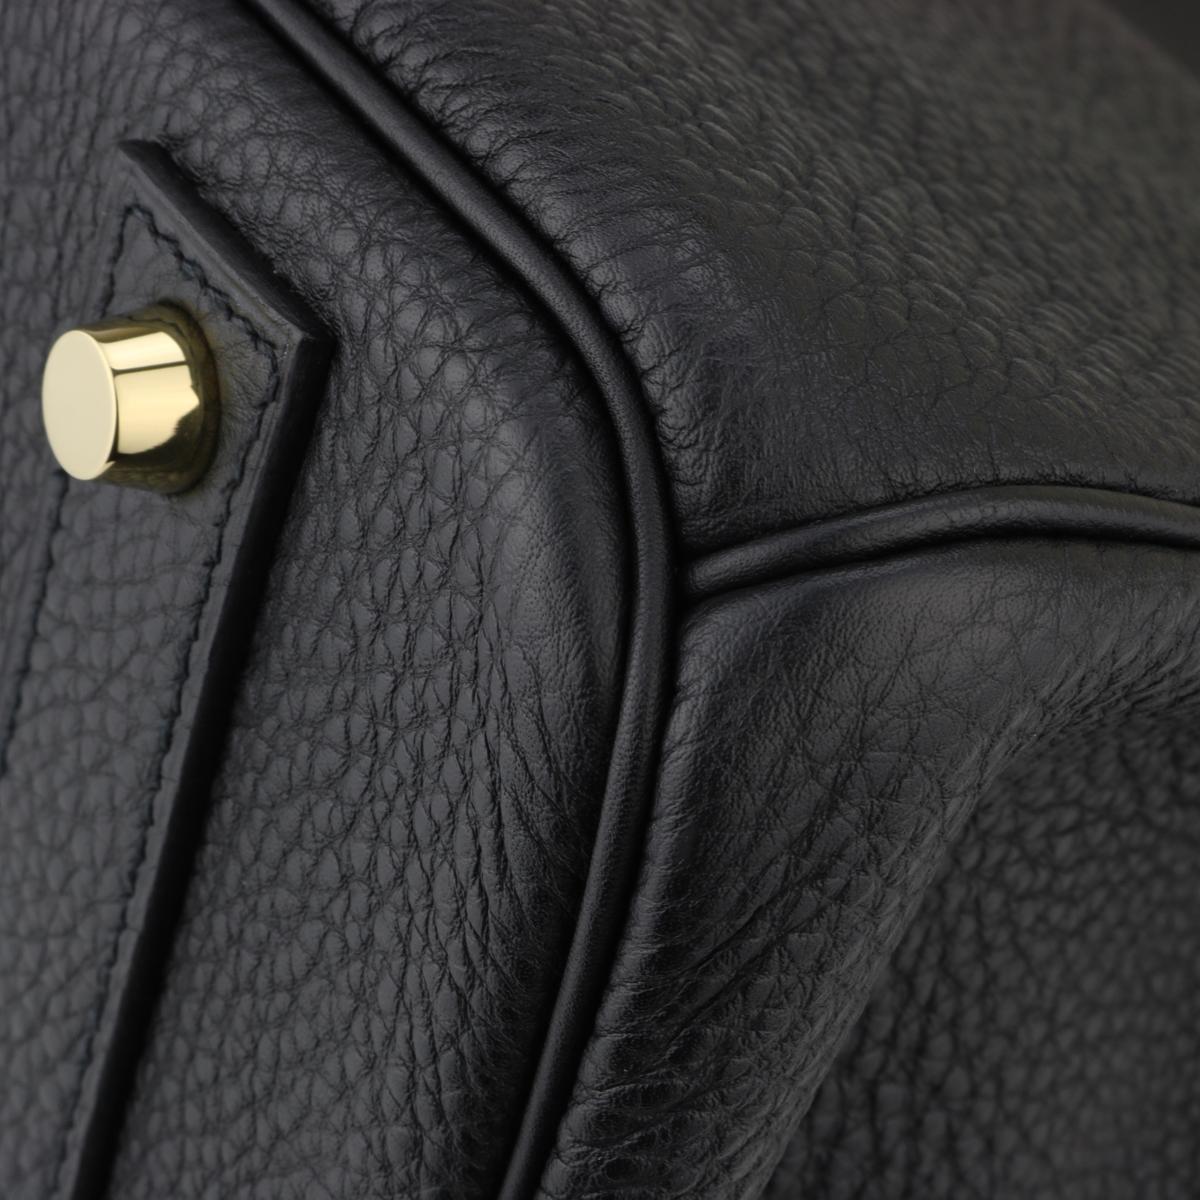 Hermès Birkin Bag 40cm Black Togo Leather with Gold Hardware Stamp N 2010 3